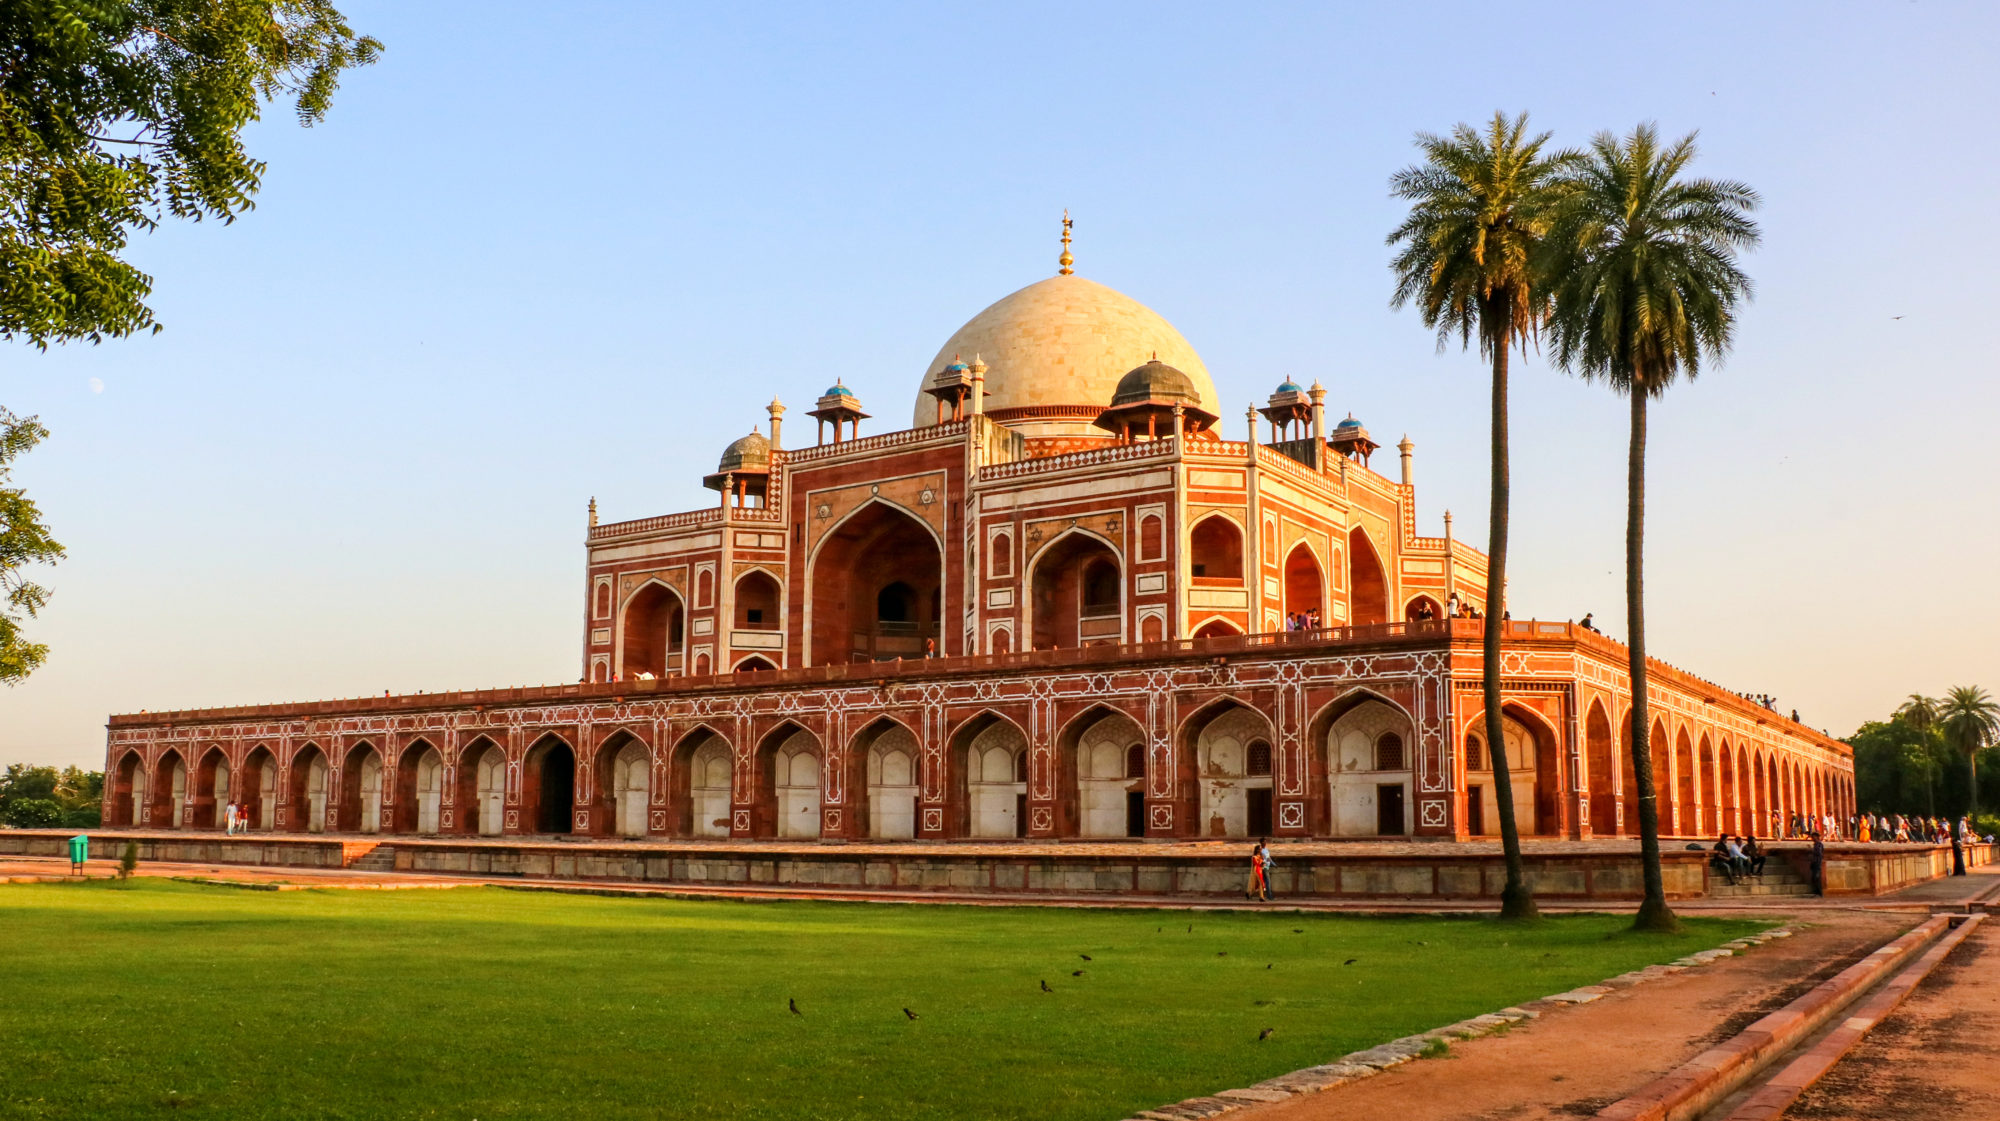 Delhi Humayan's Tomb, India